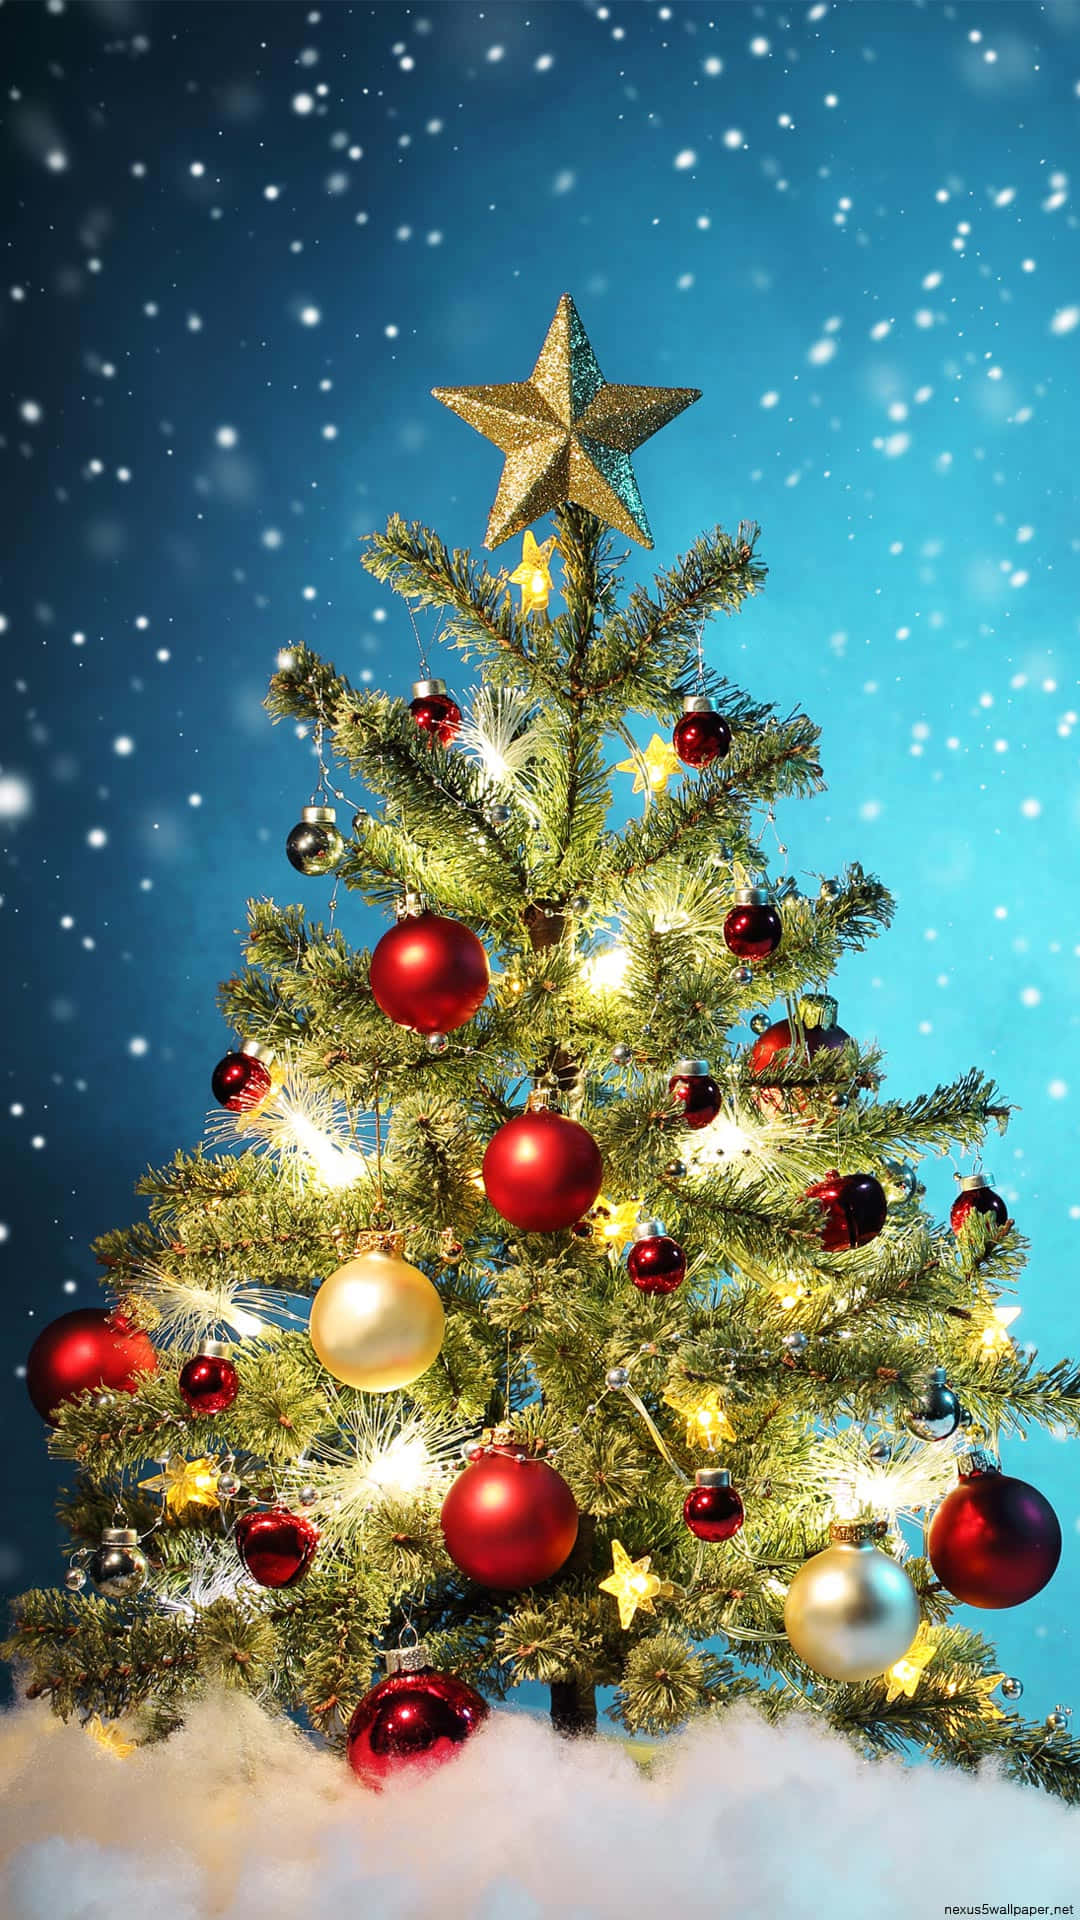 Denne festlige jule træ er det perfekte addede til dine ferie dekorationer! Wallpaper